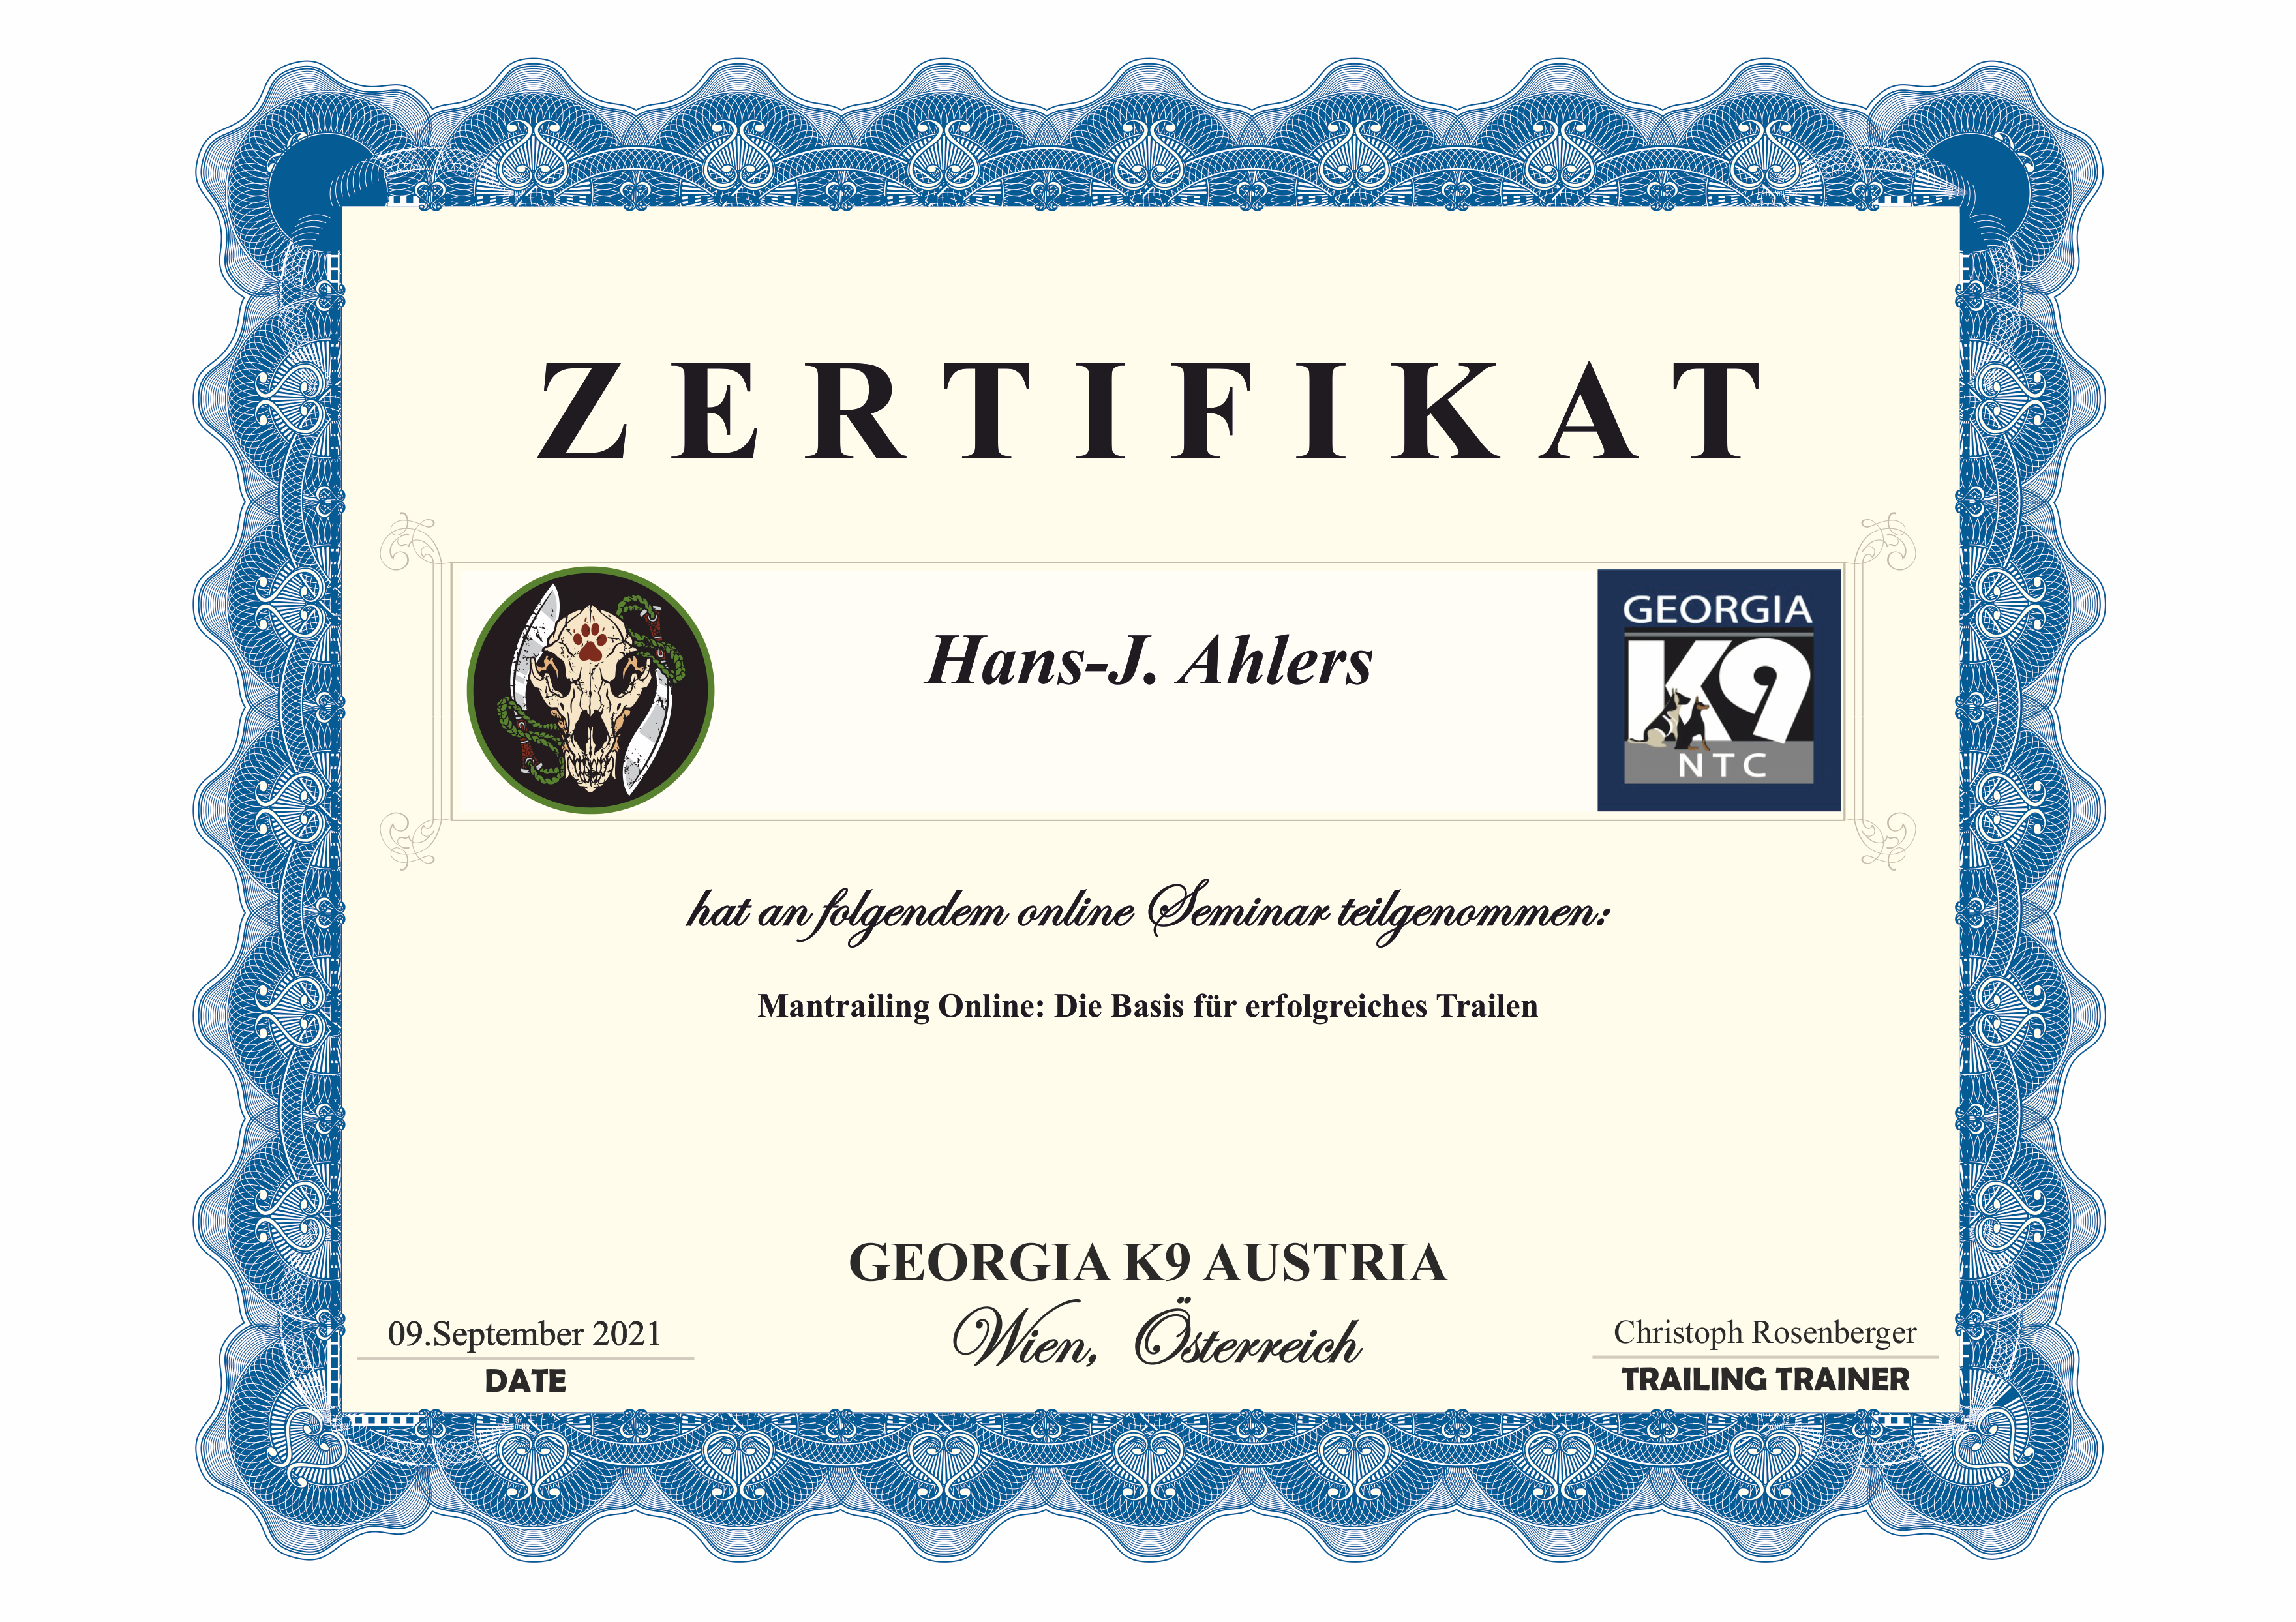 Zertifikat Hans-J. Ahlers -Seminar-Teilnahme K9-Gorgia-Austria